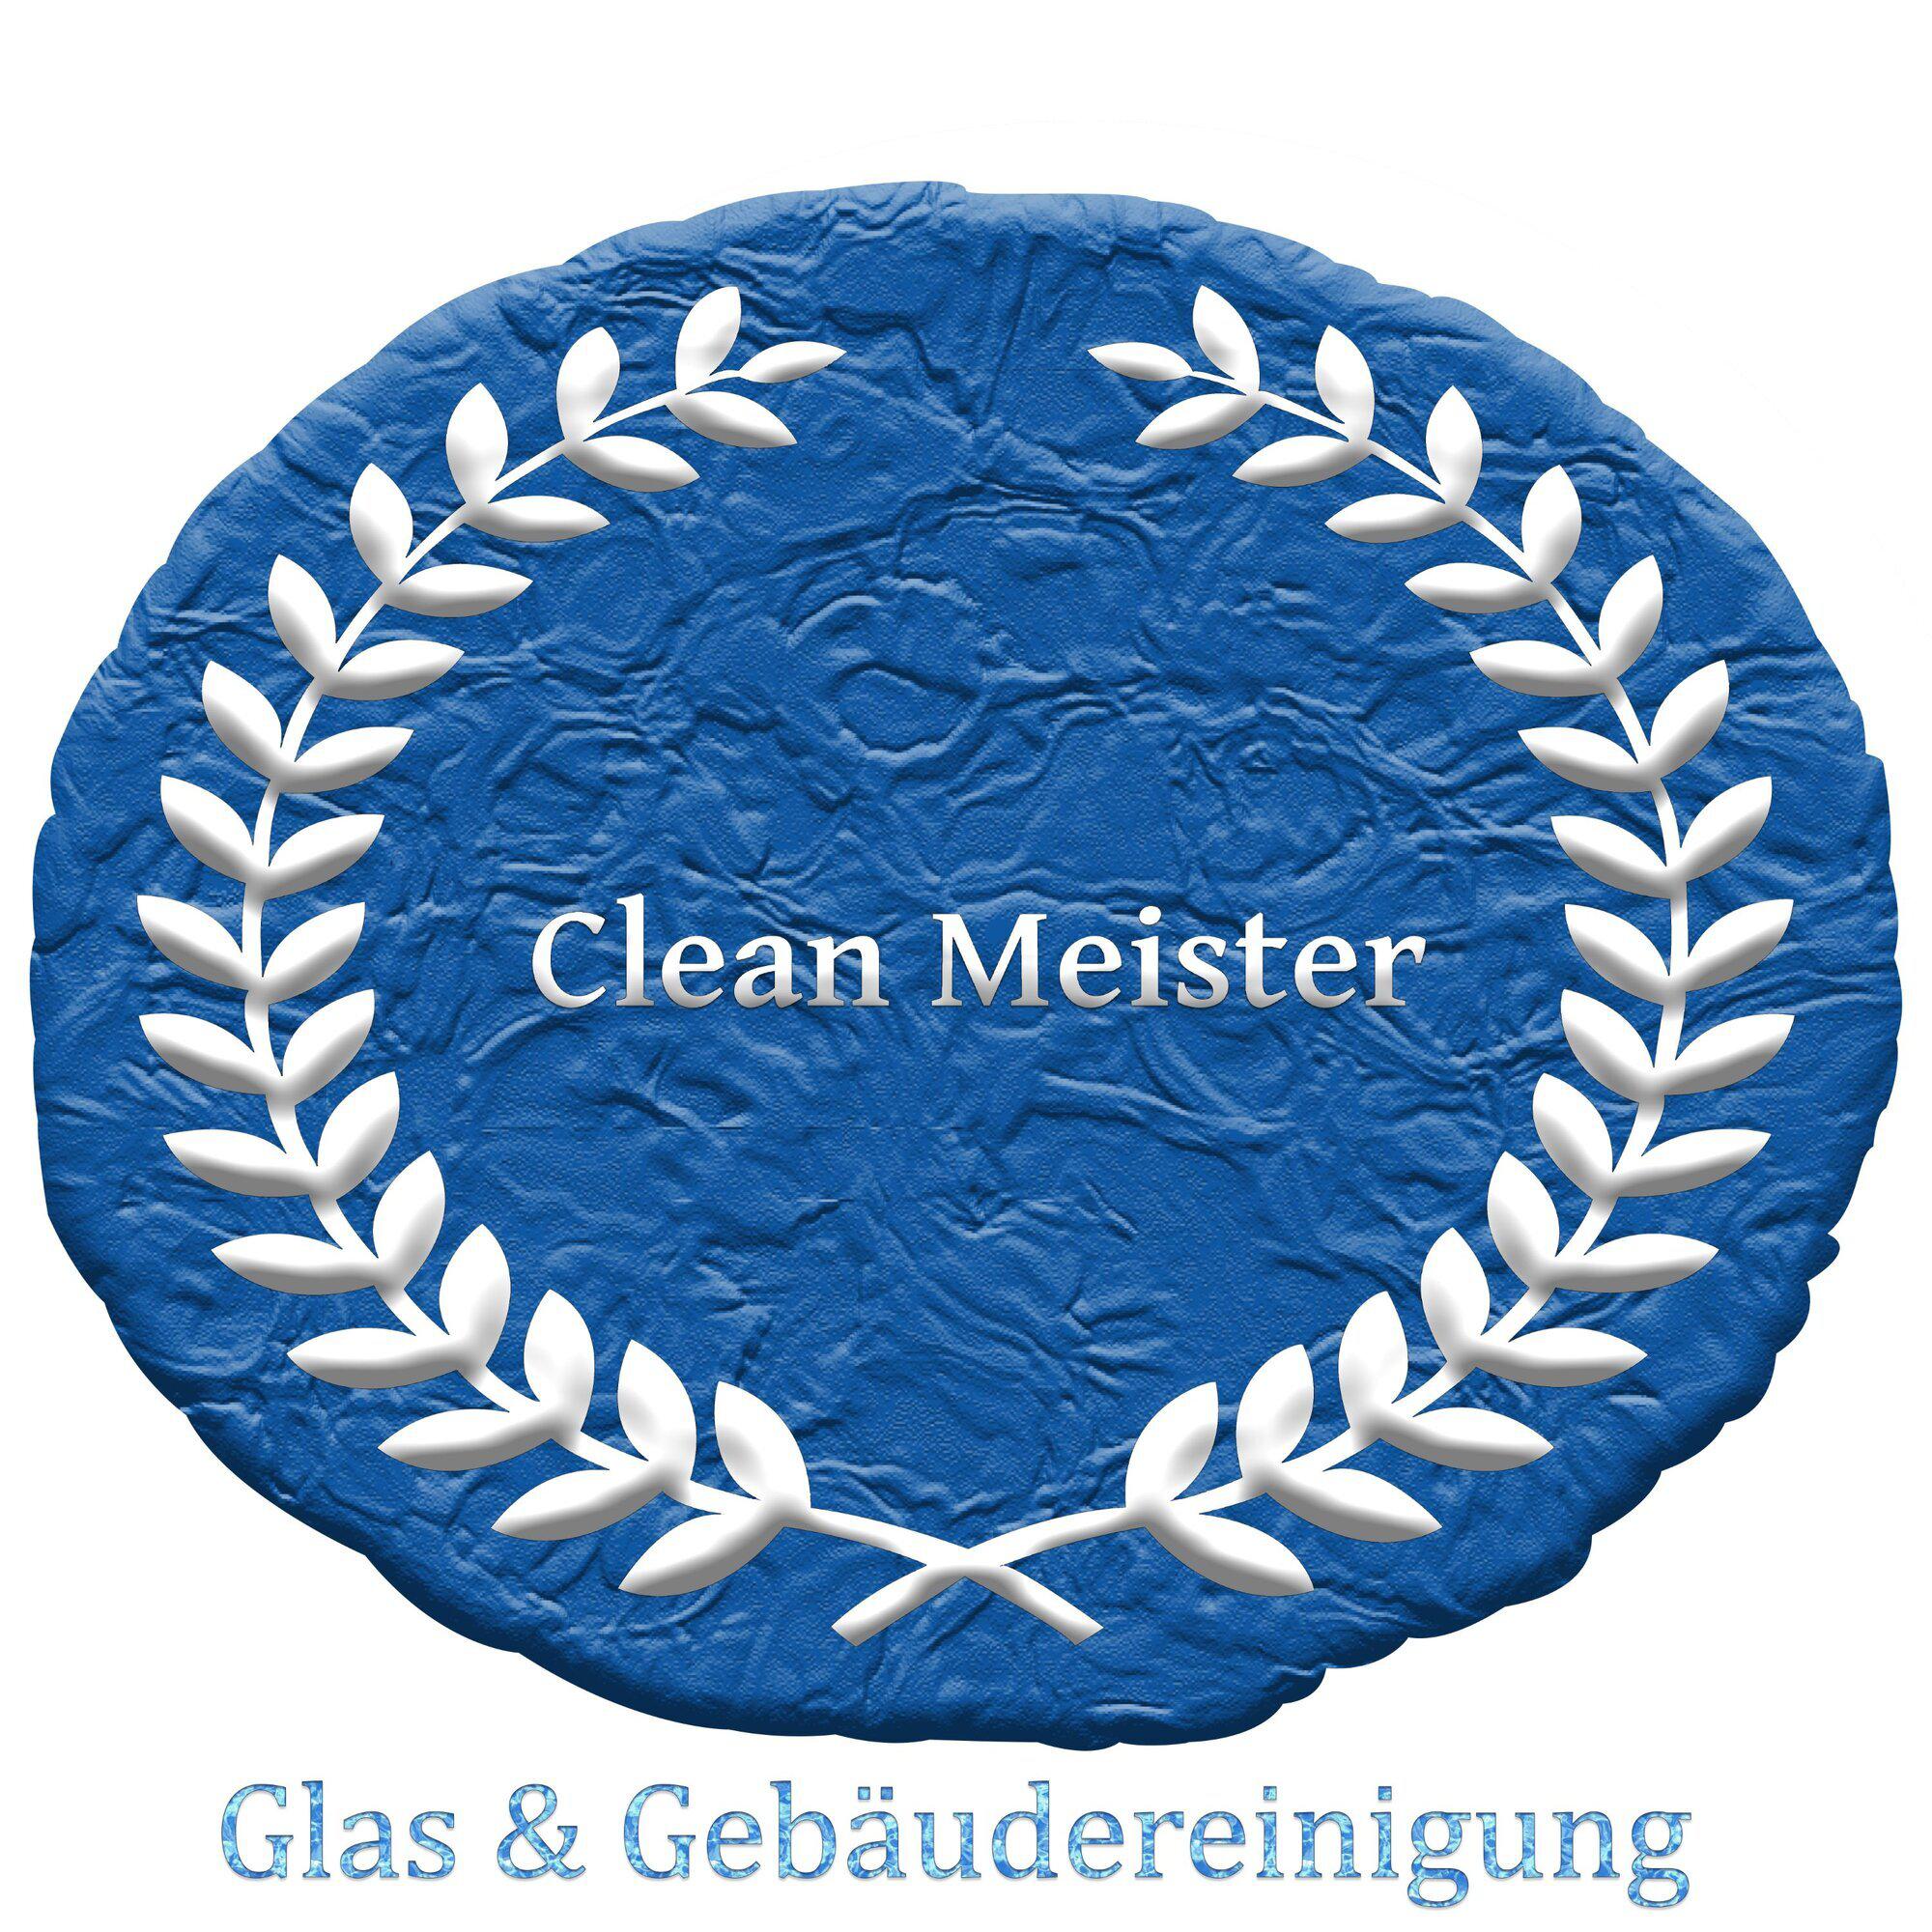 Kundenbild groß 9 Clean Meister Glas & Gebäudereinigung